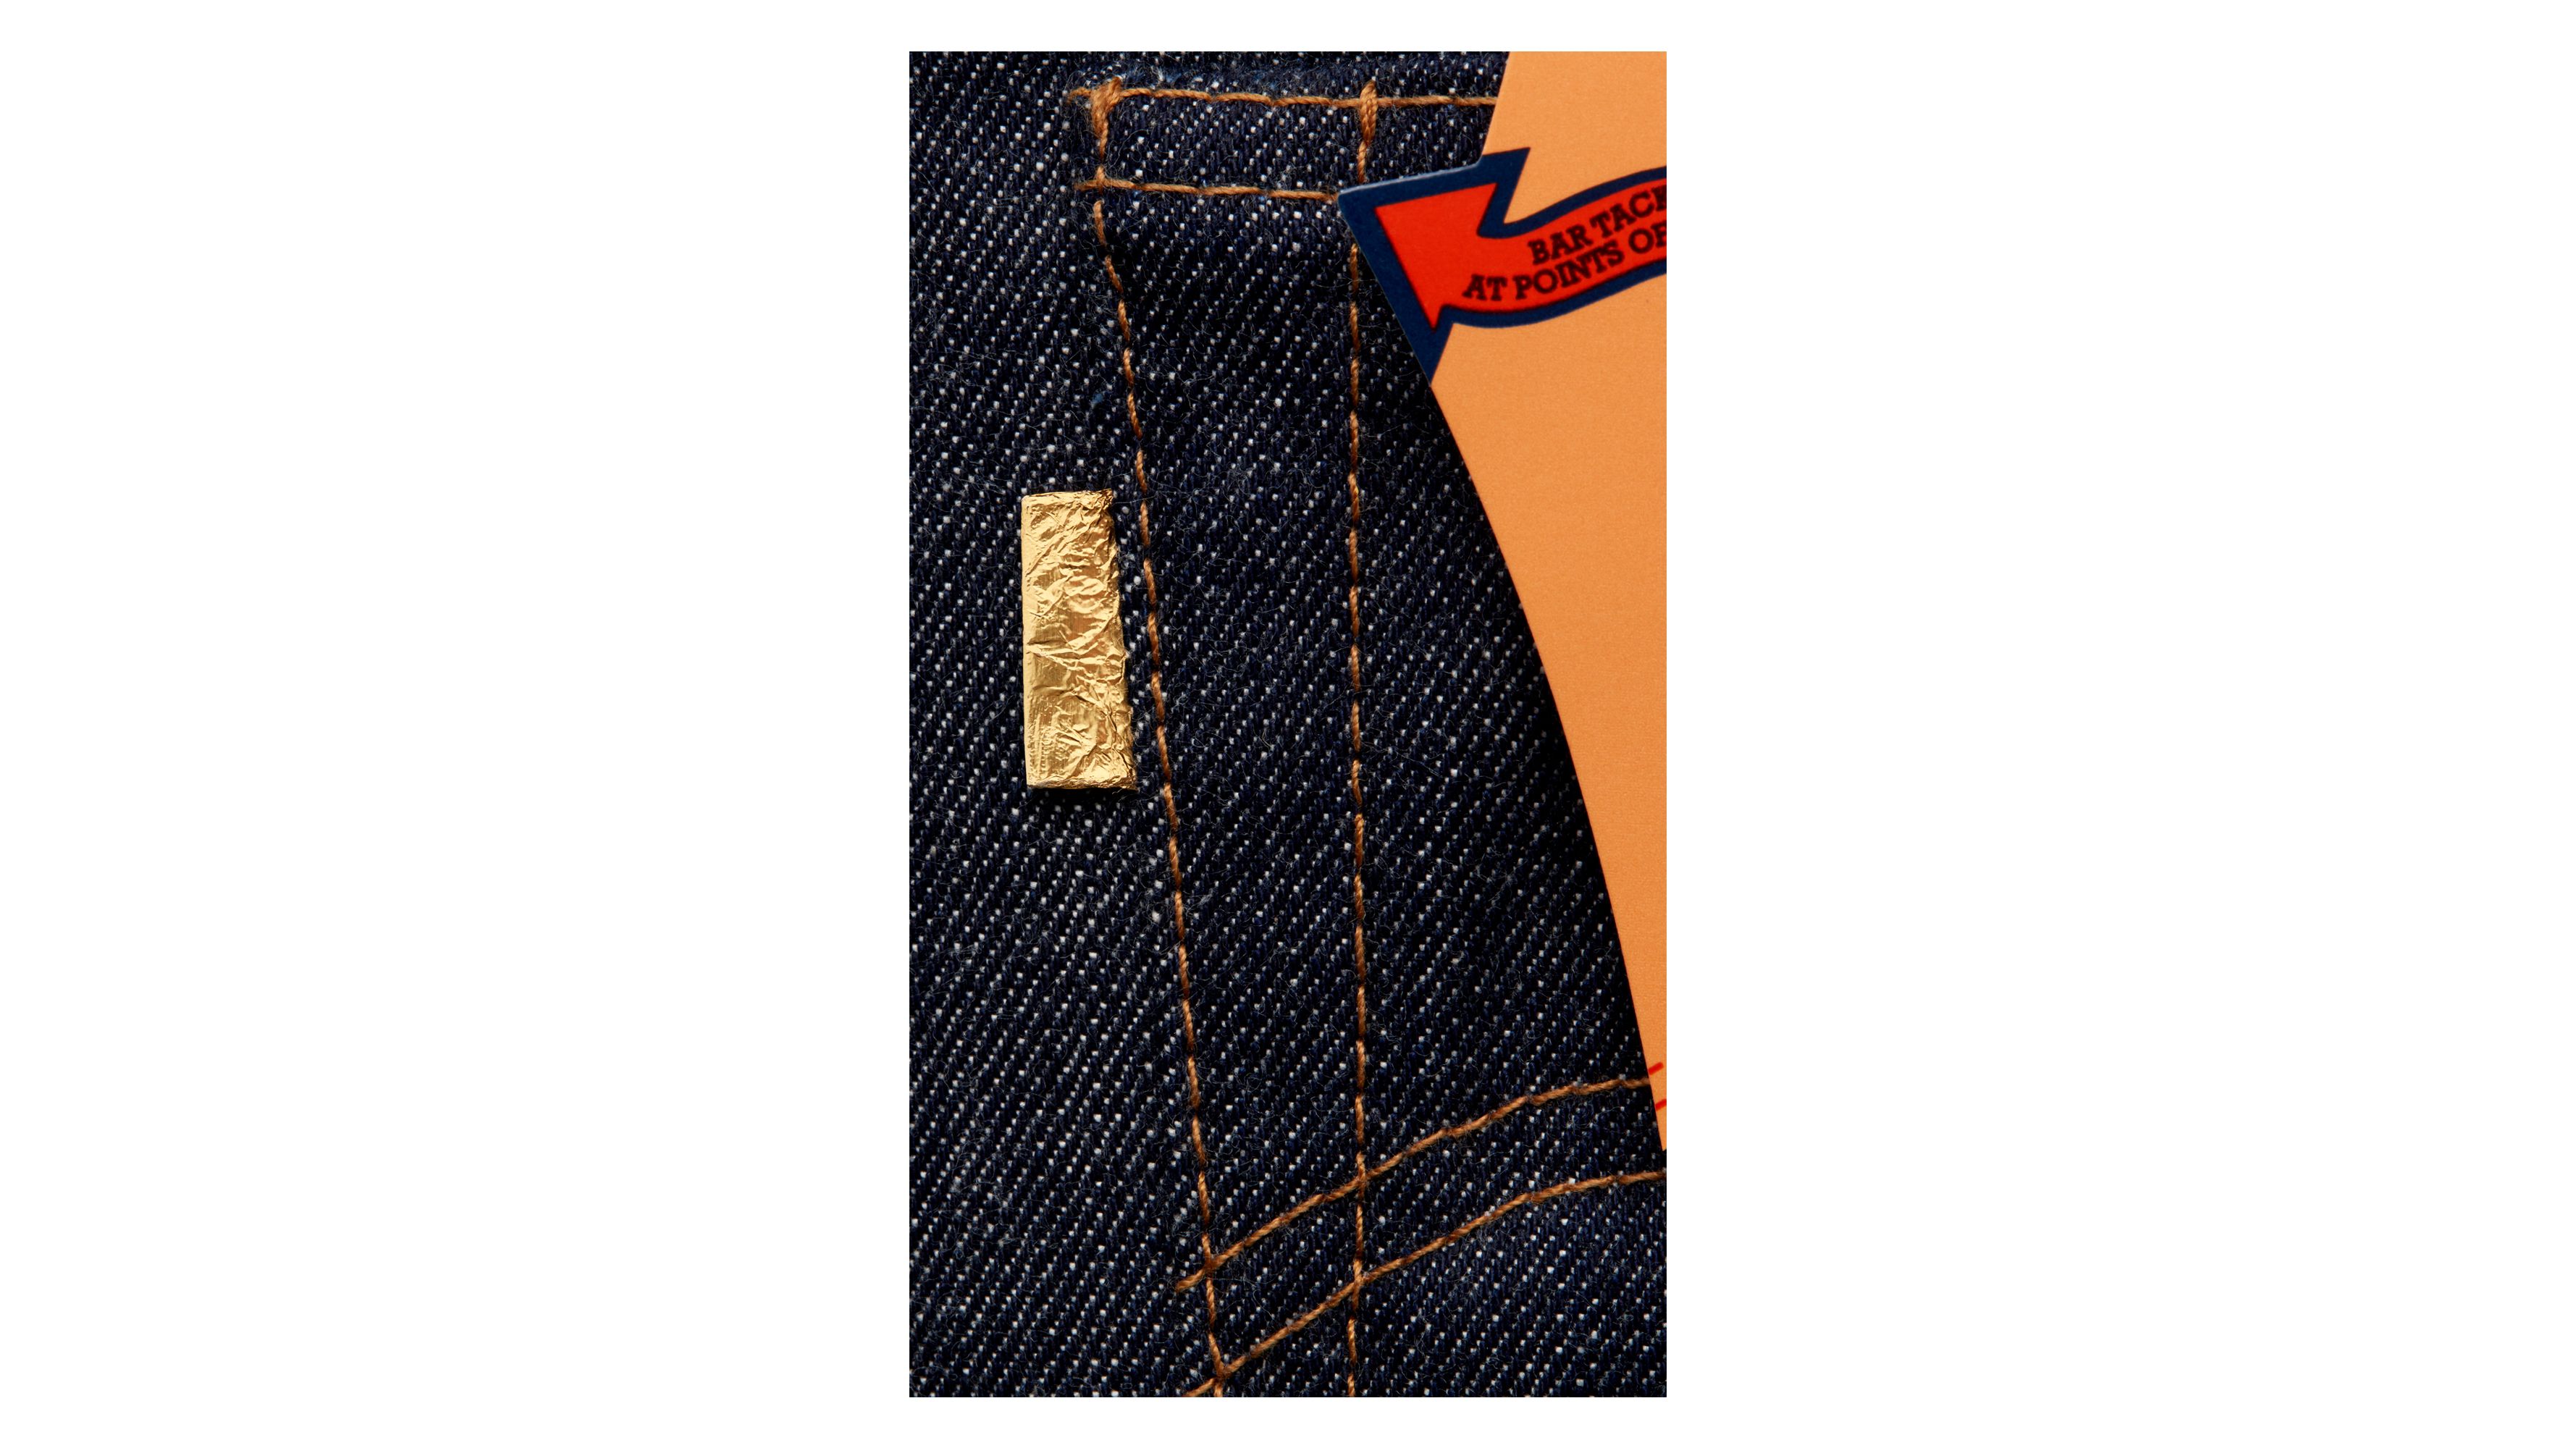 1971 Golden Ticket 501® Jeans - Dark Wash | Levi's® US